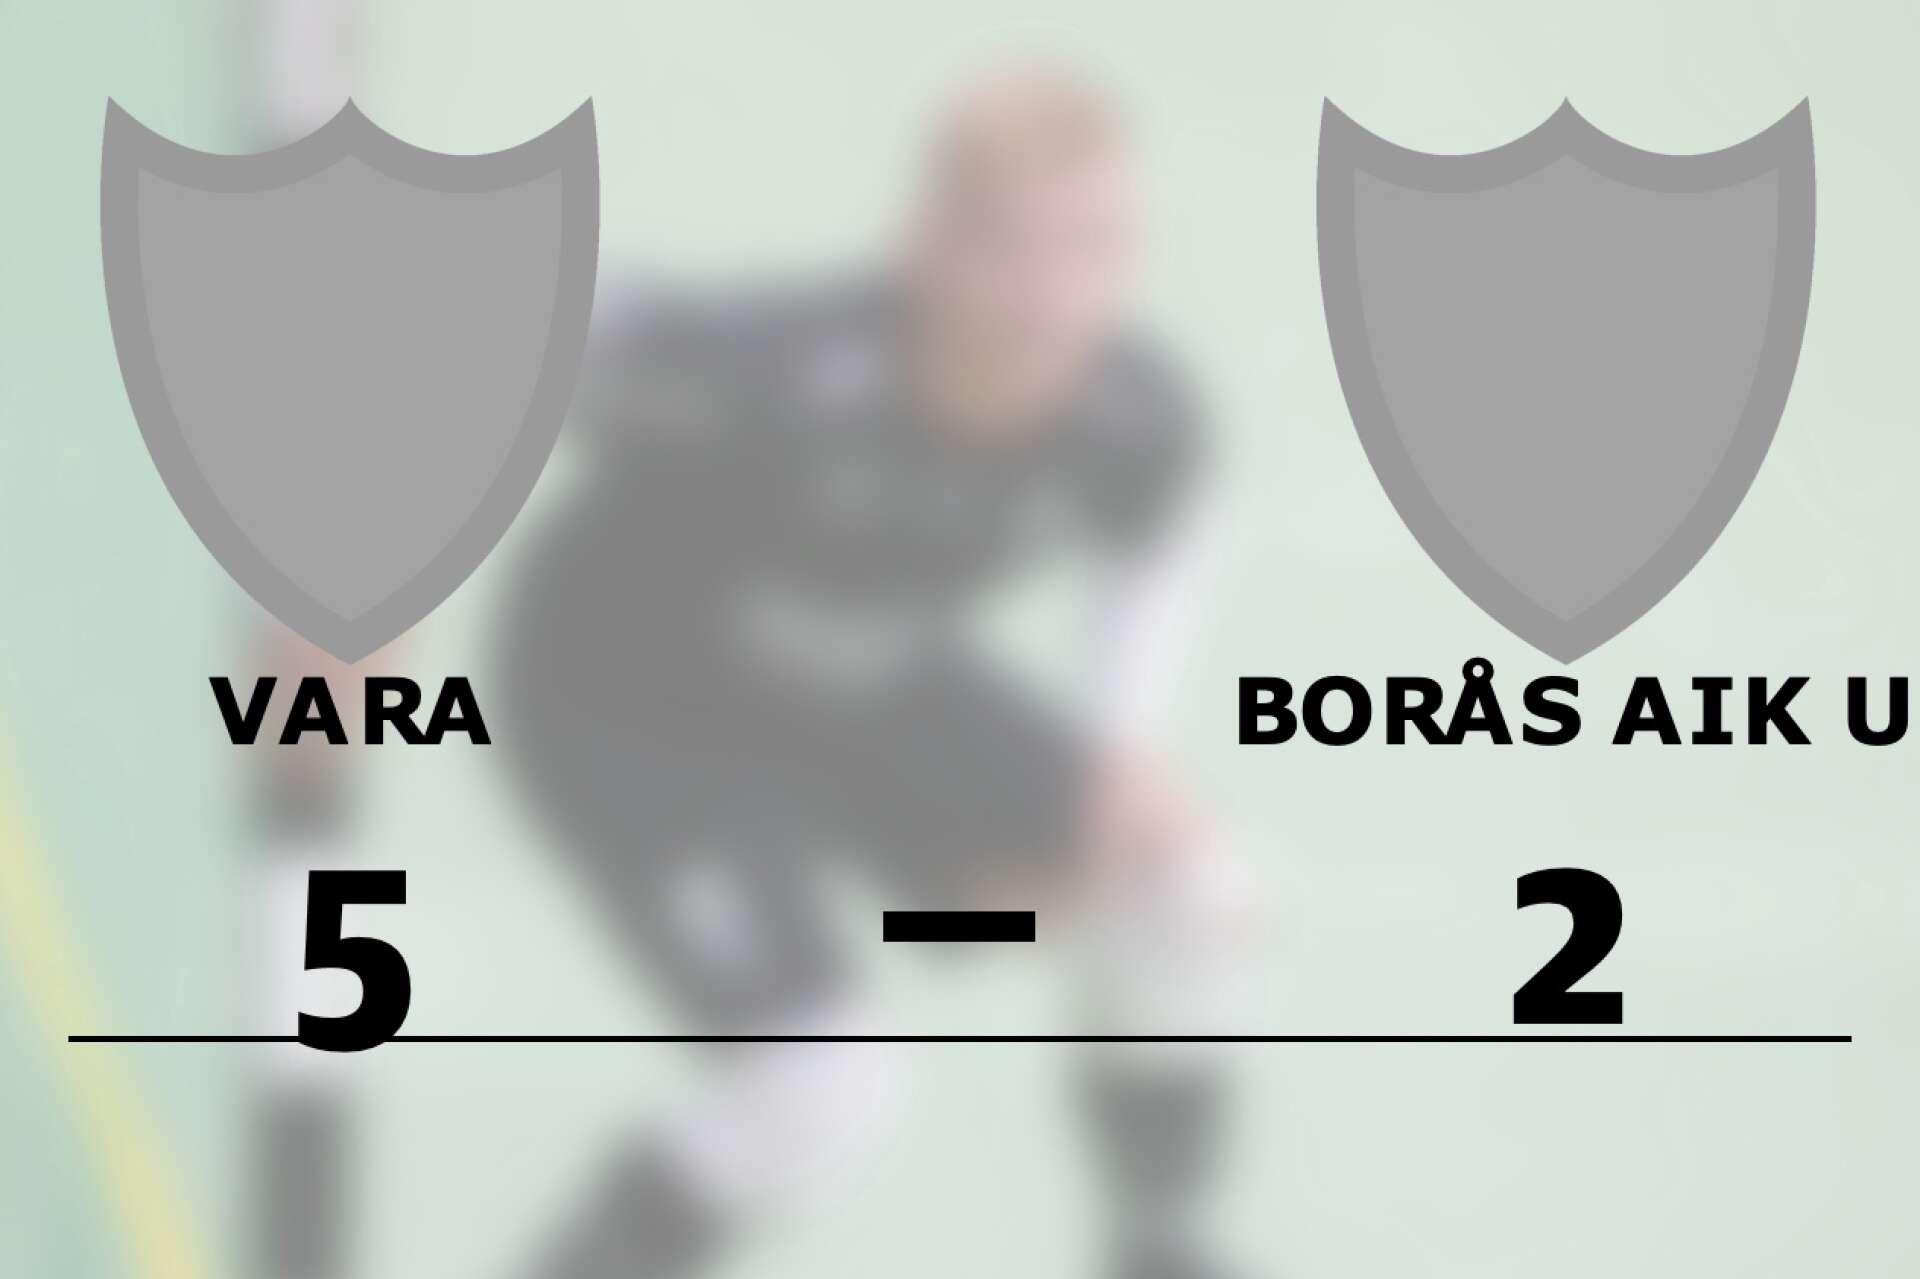 Vara vann mot Borås AIK U